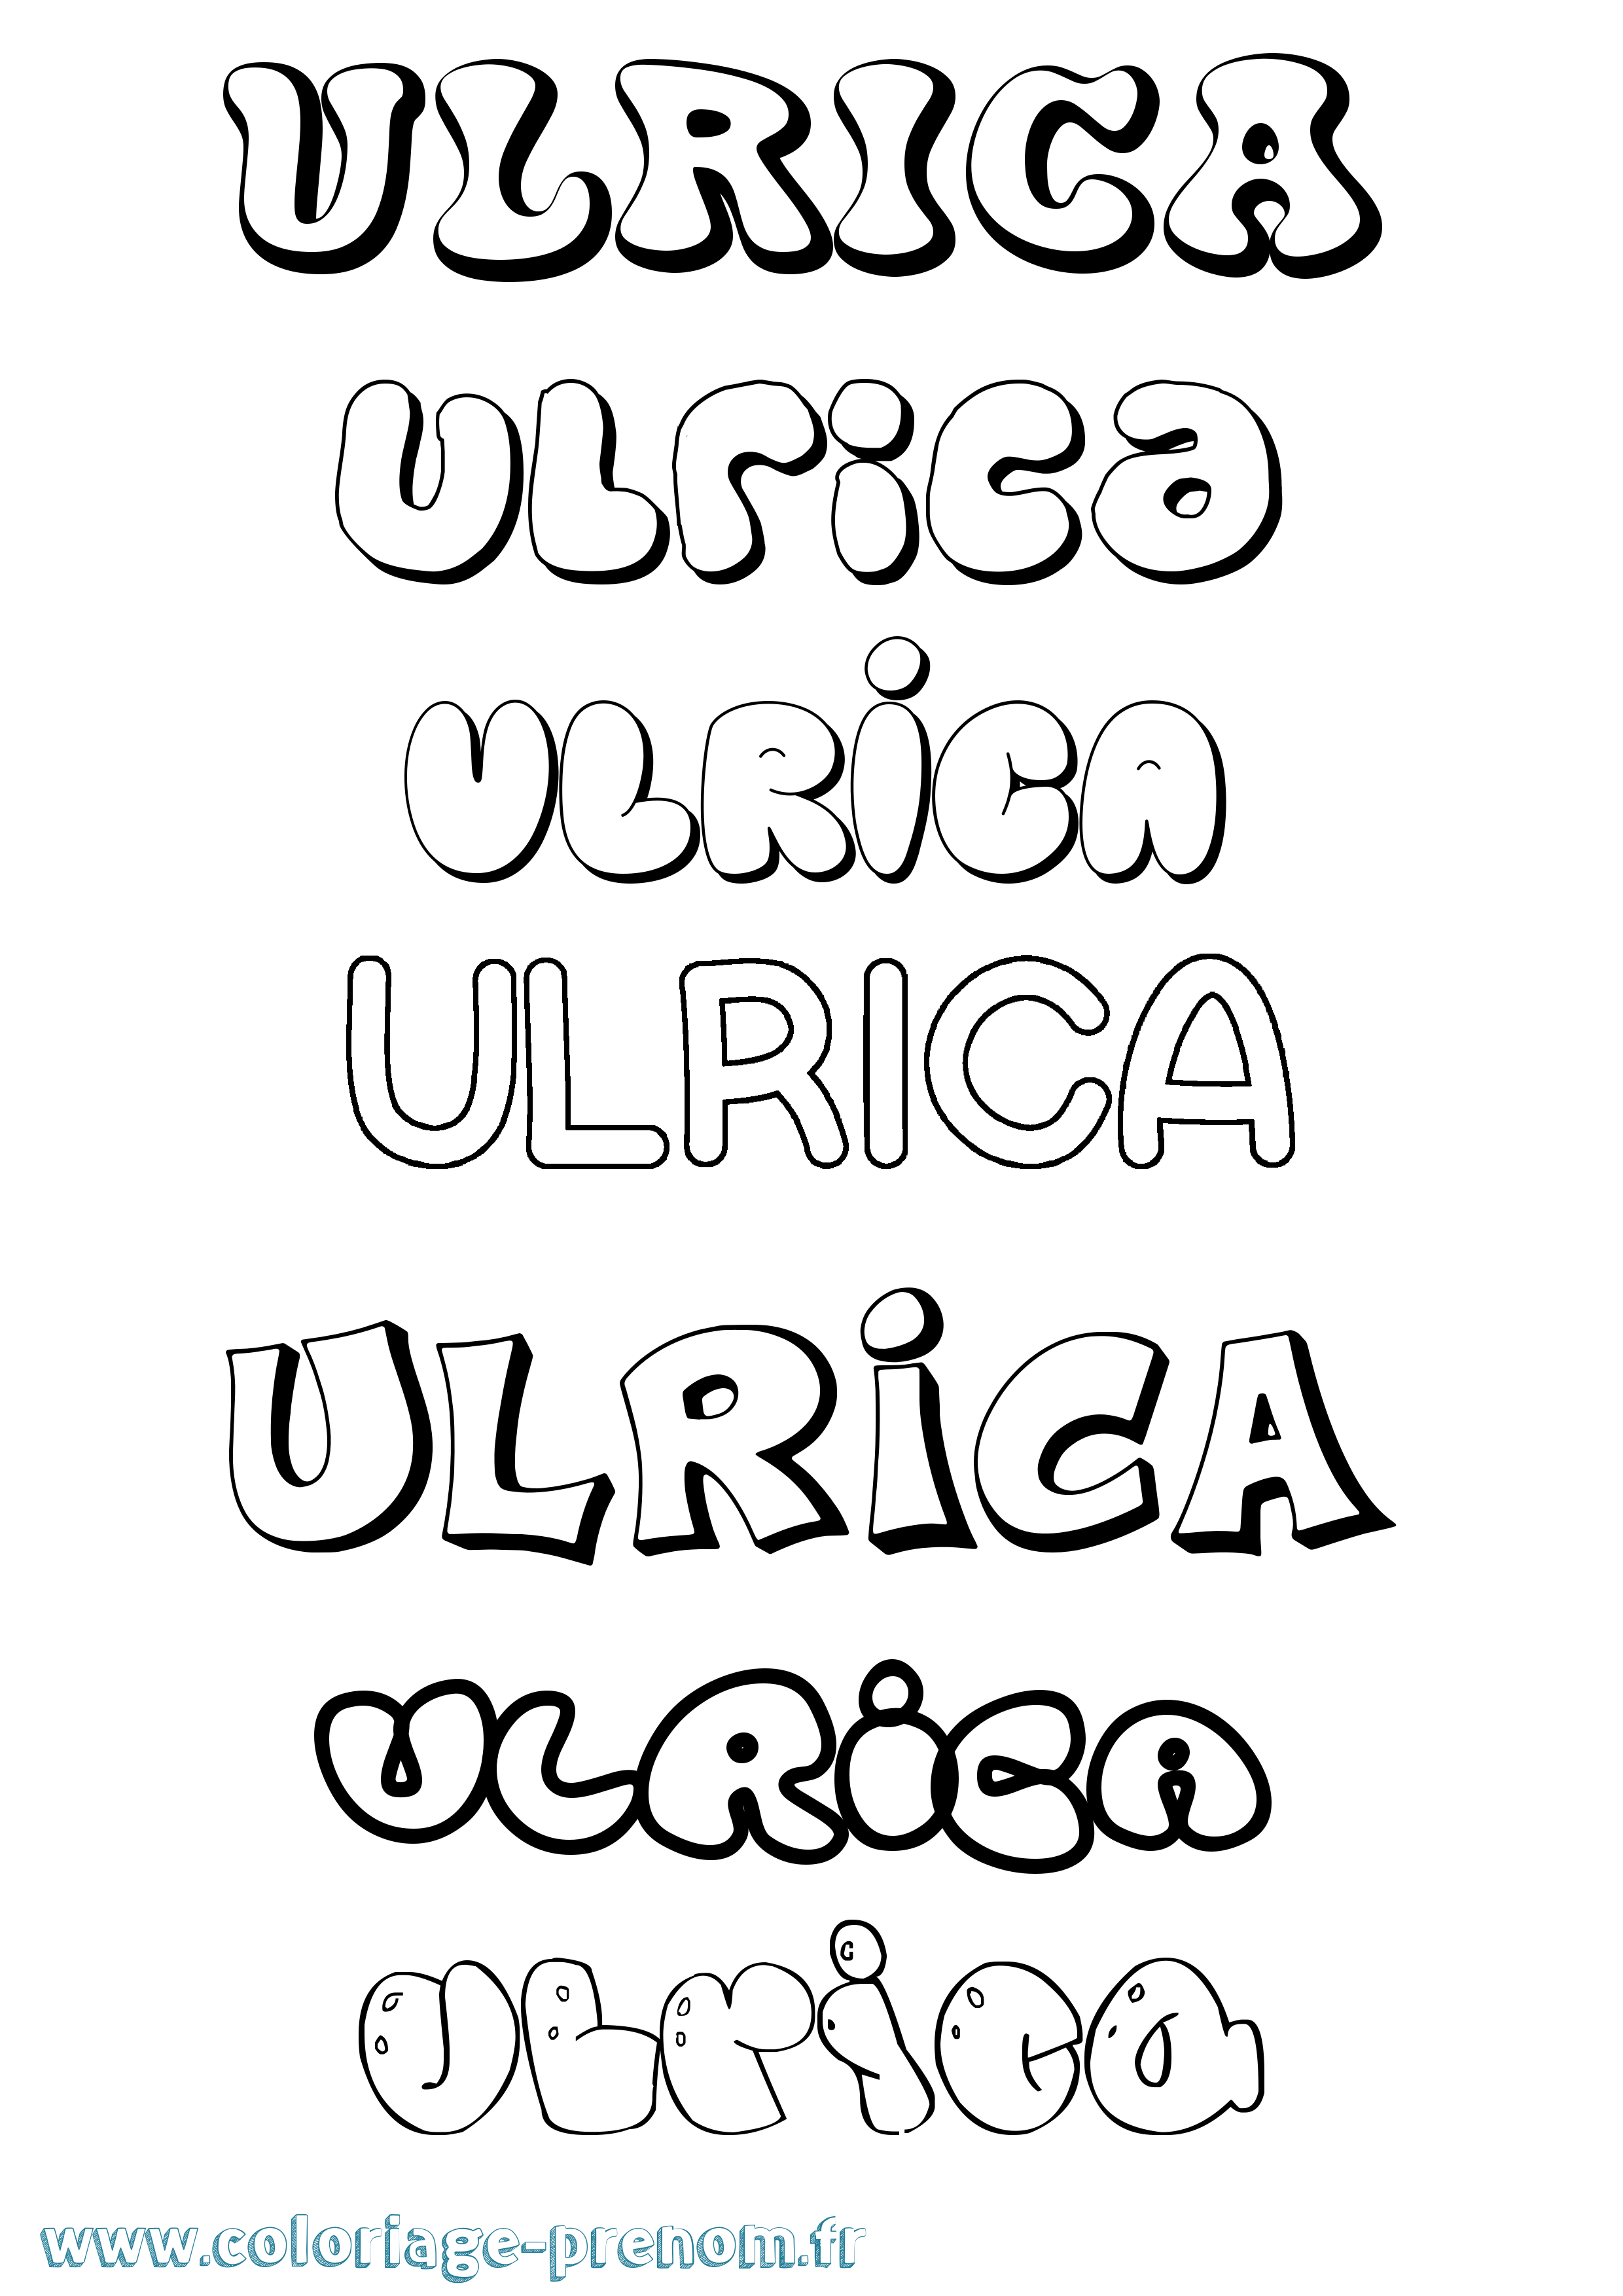 Coloriage prénom Ulrica Bubble